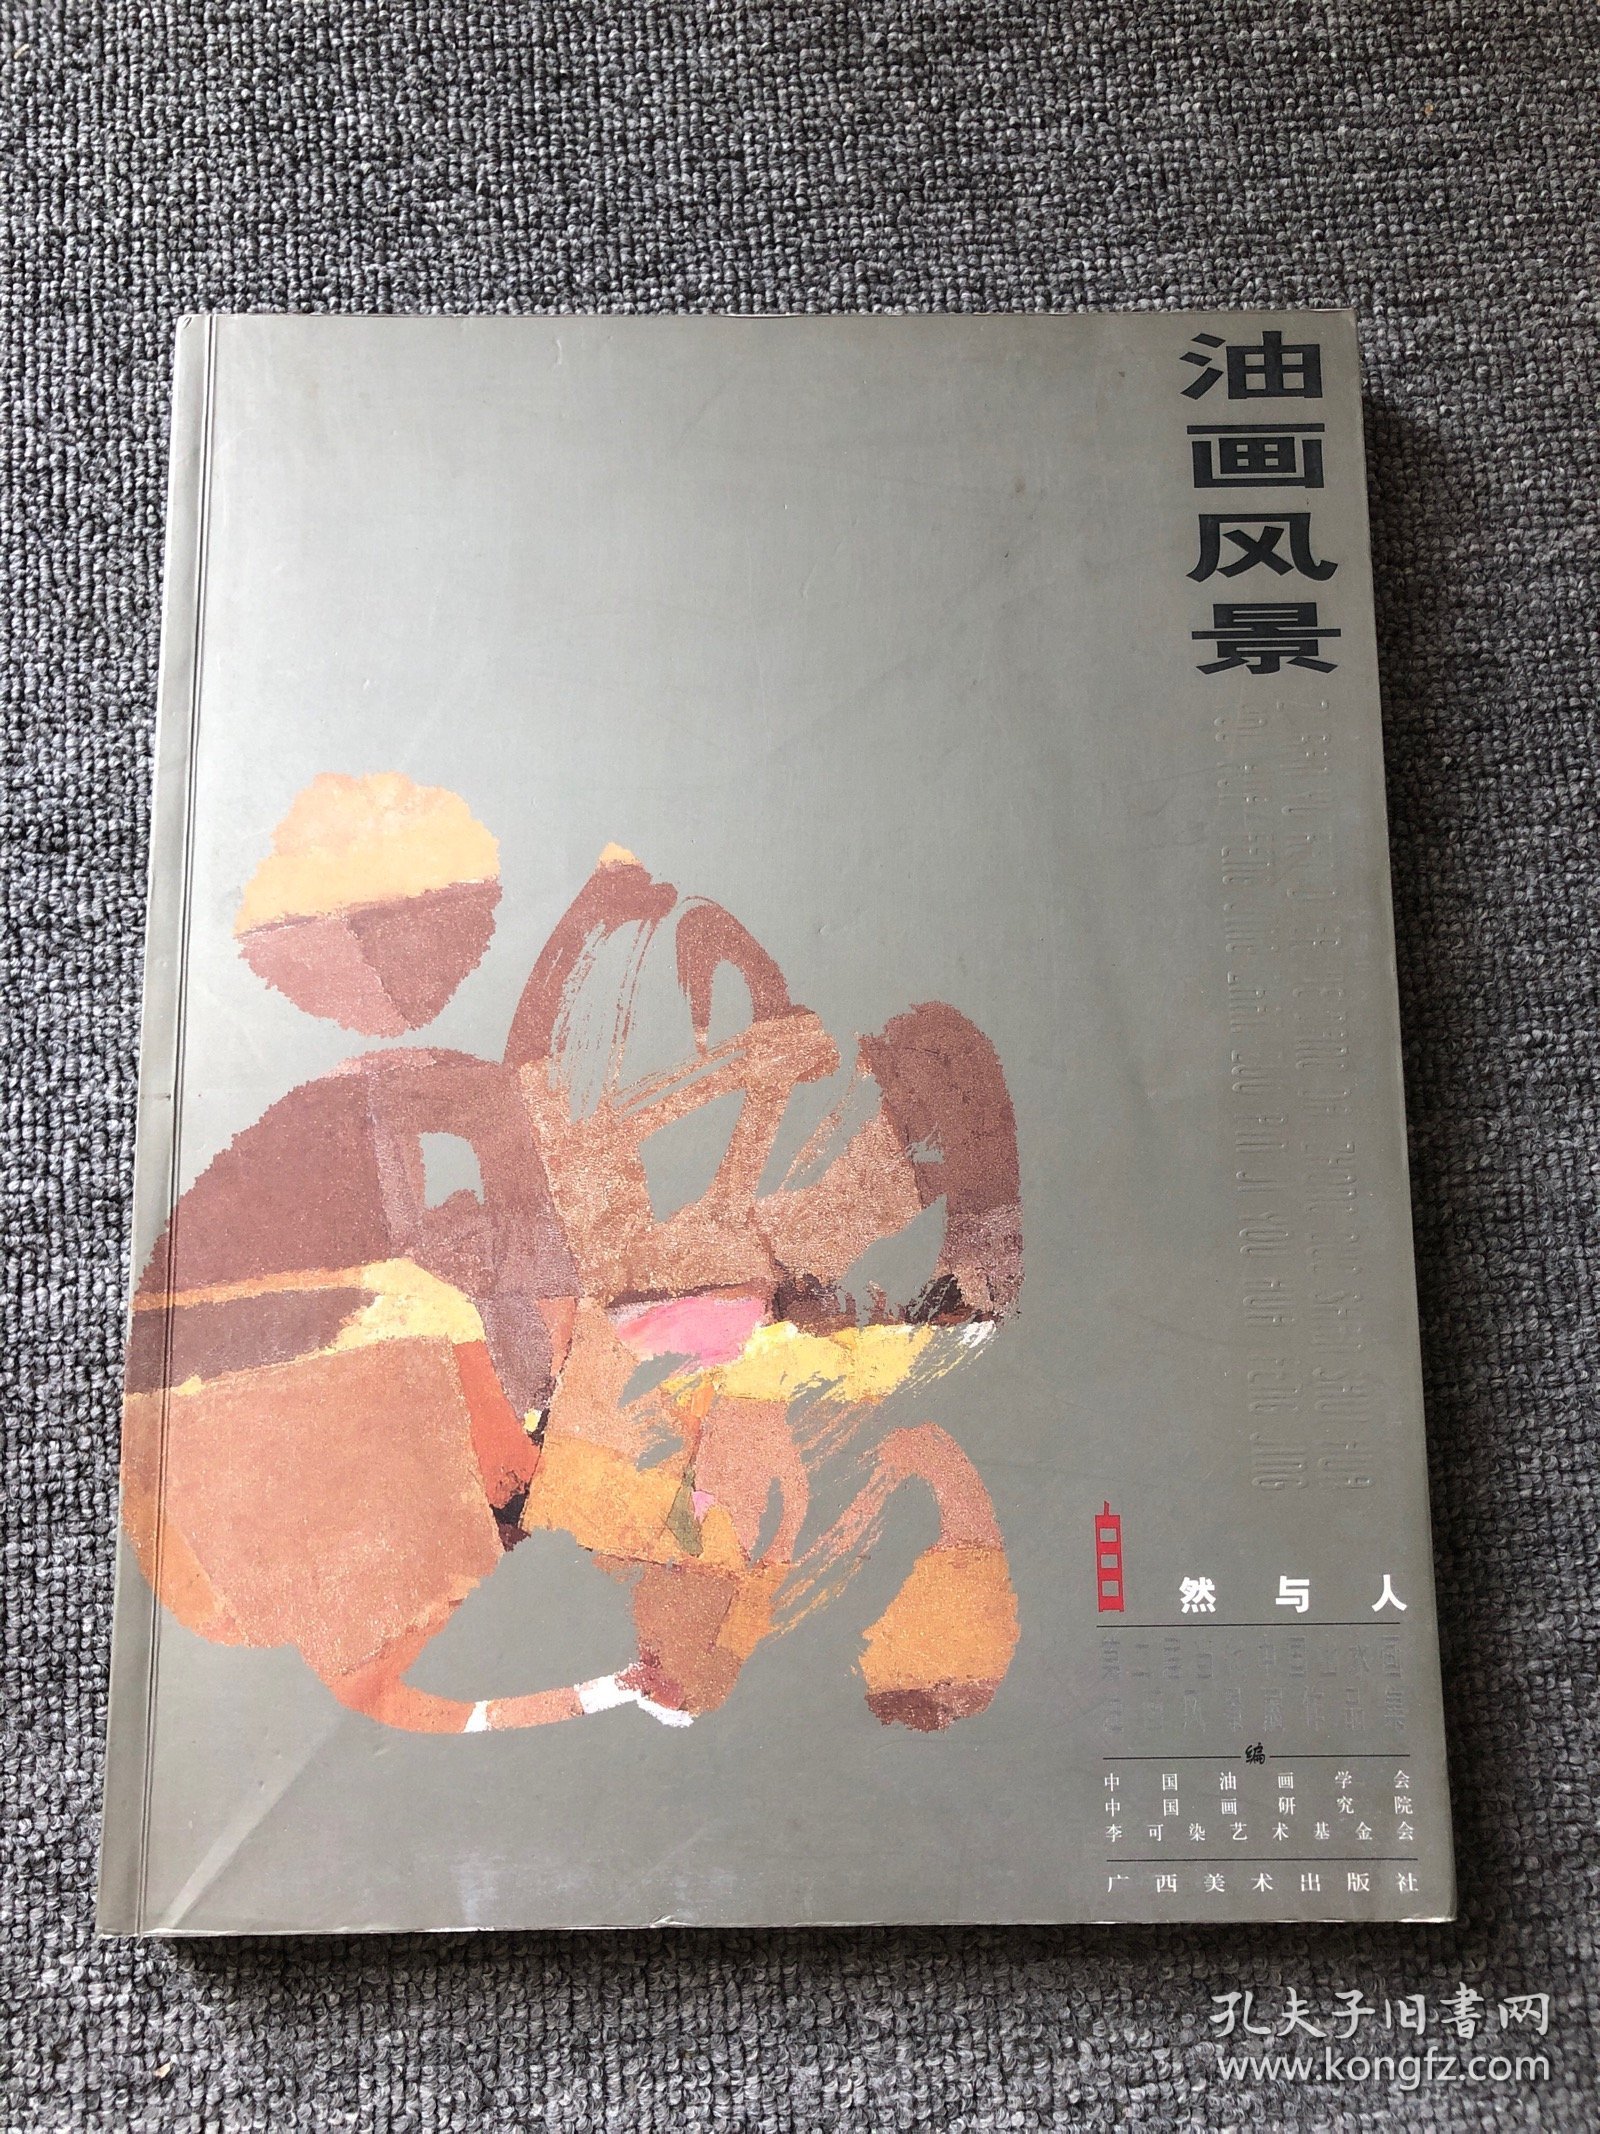 油画风景—自然与人 第二届当代中国山水画油画风景展作品集